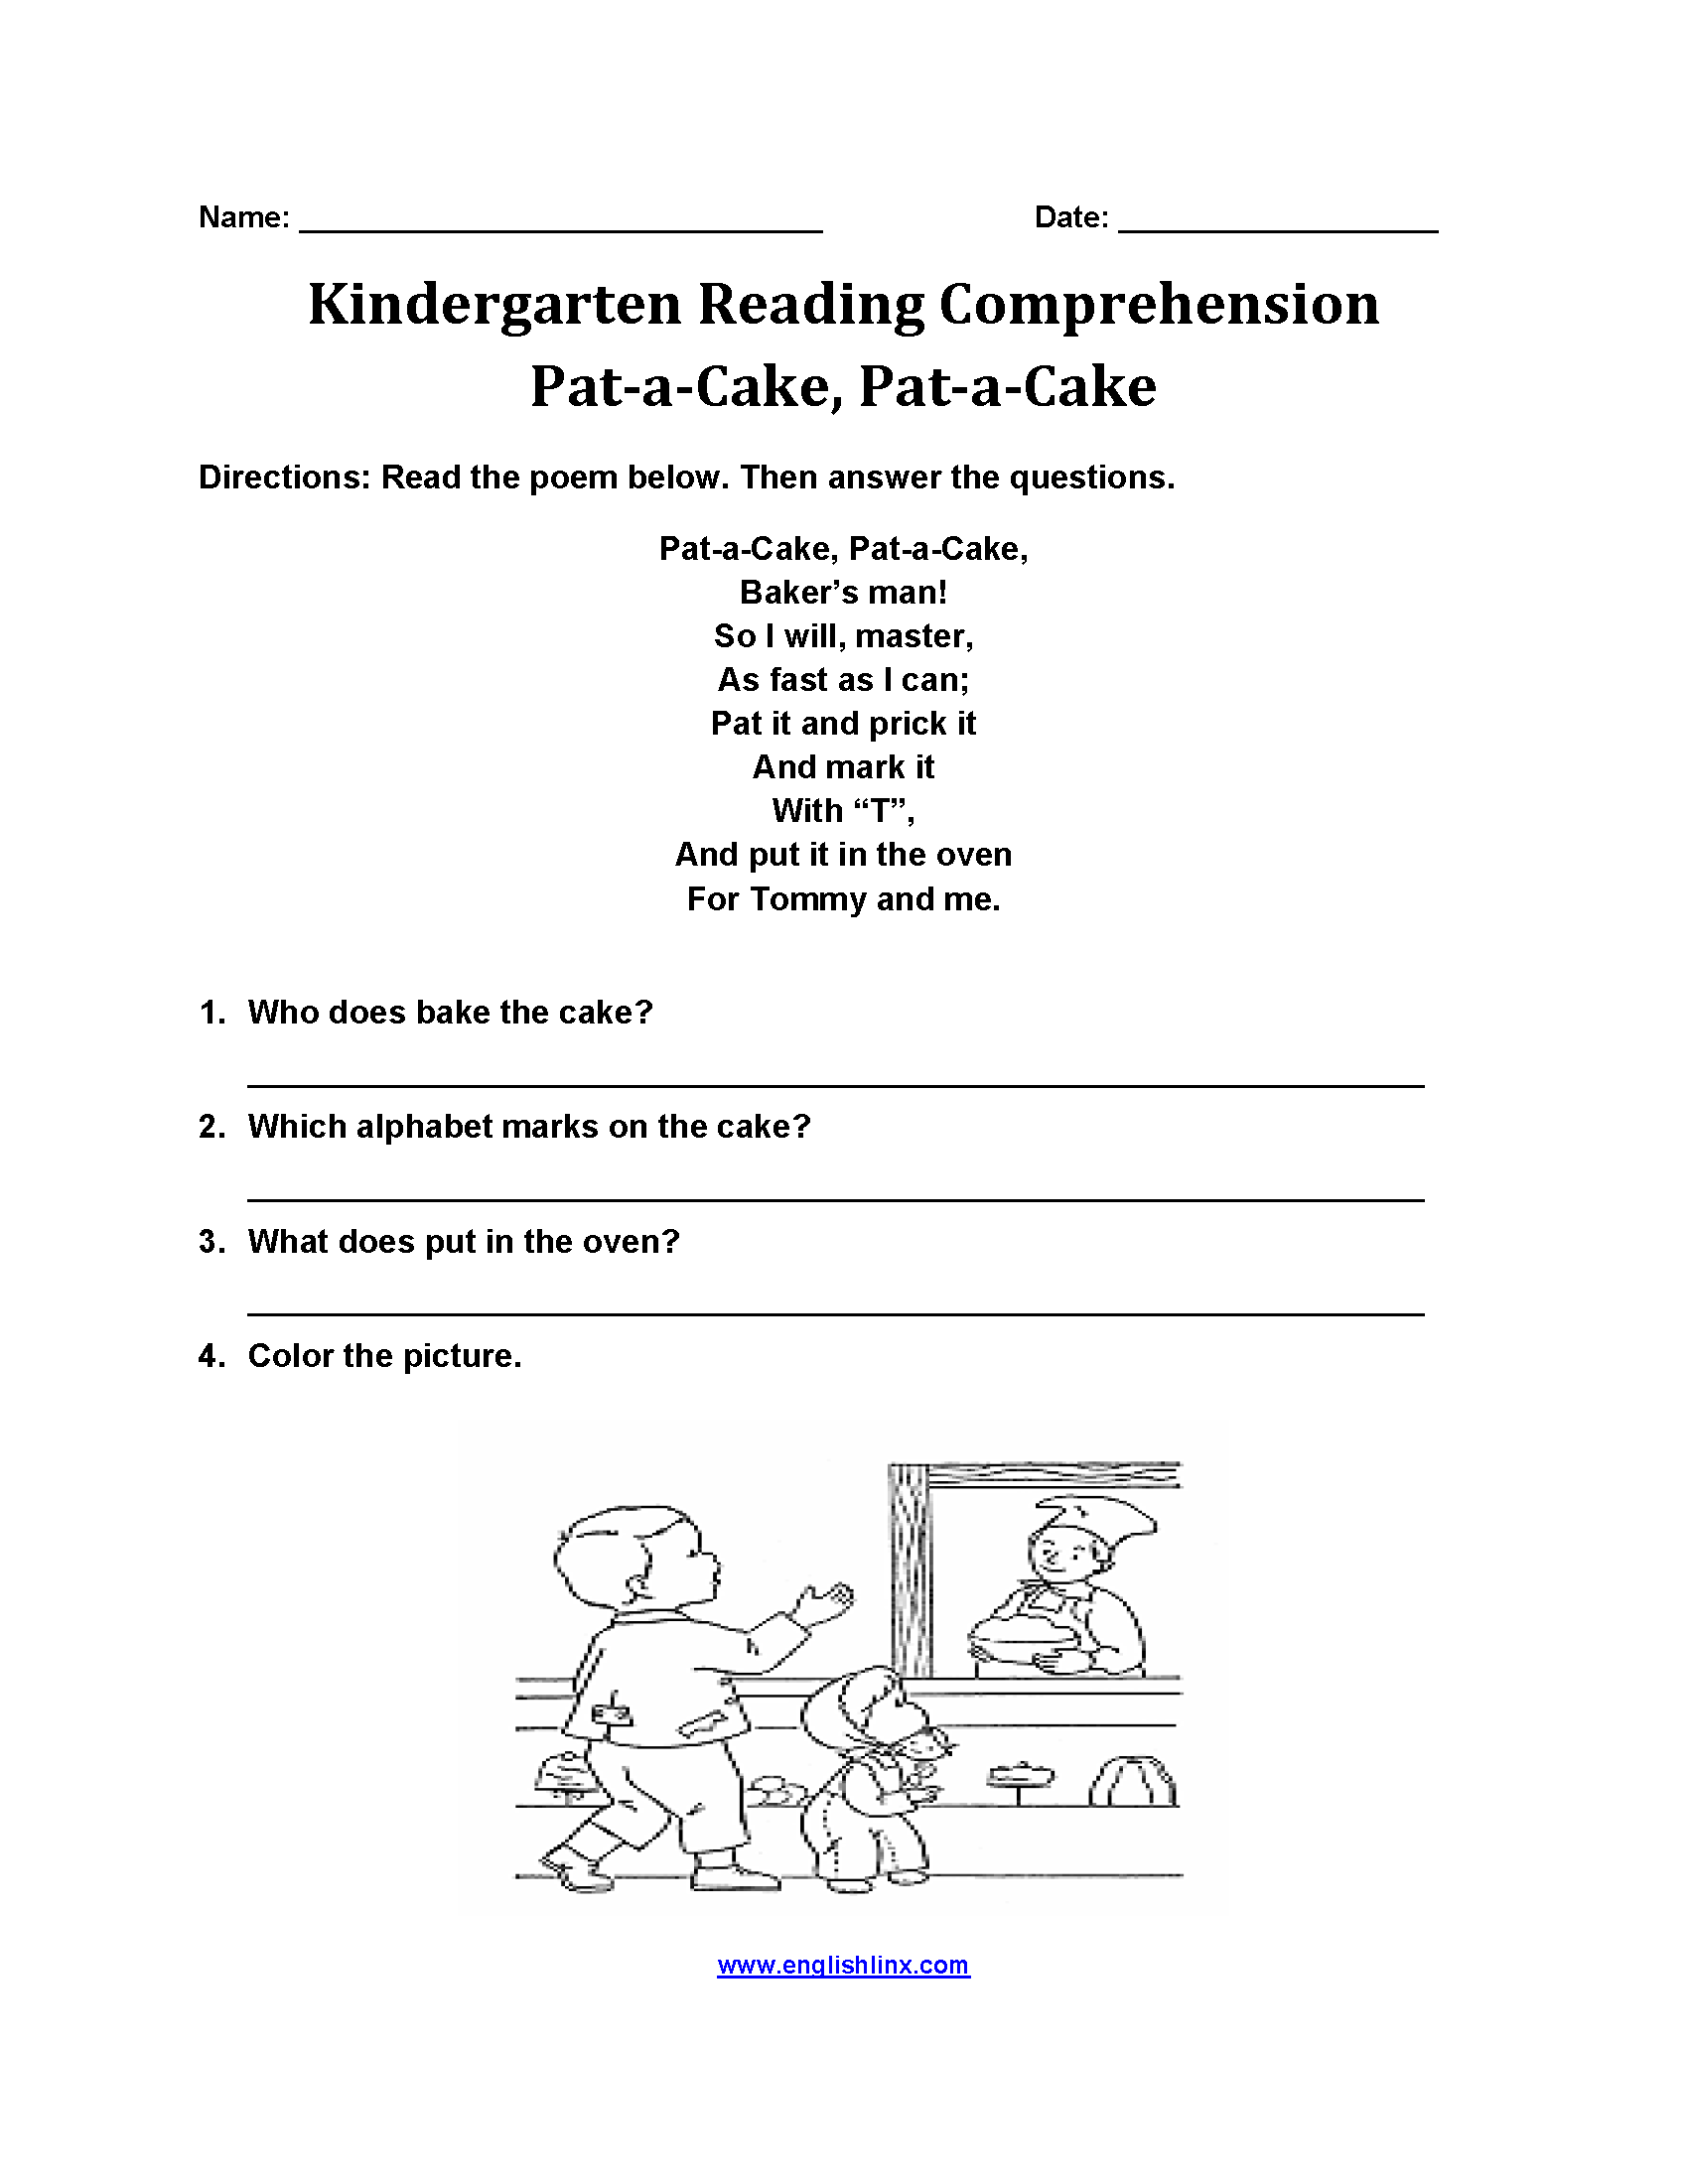 Pat a Cake Kindergarten Reading Comprehension Worksheets